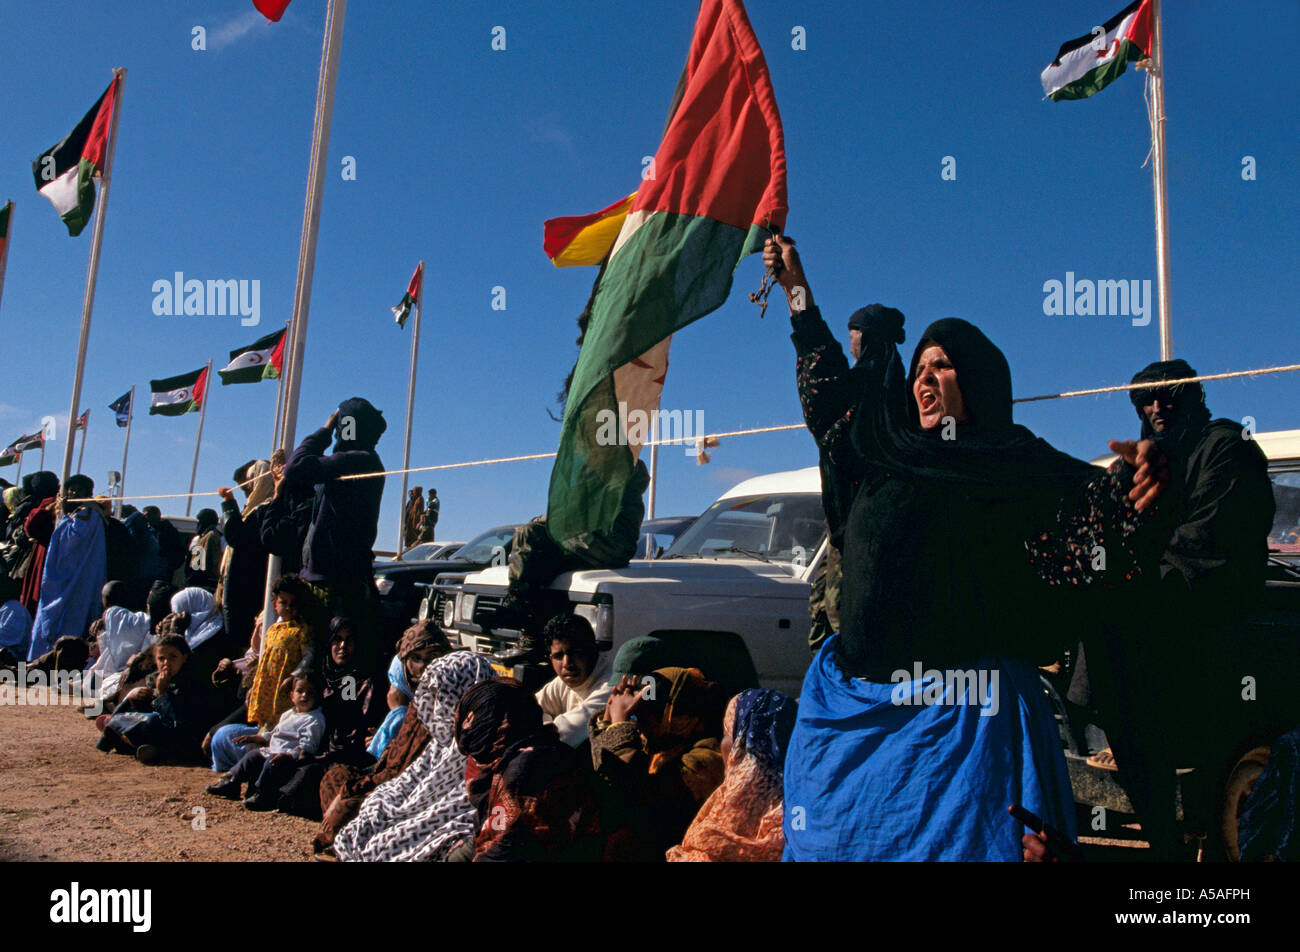 Les femmes sahraouis célébrant le jour de l'indépendance dans l'ouest algérien Banque D'Images